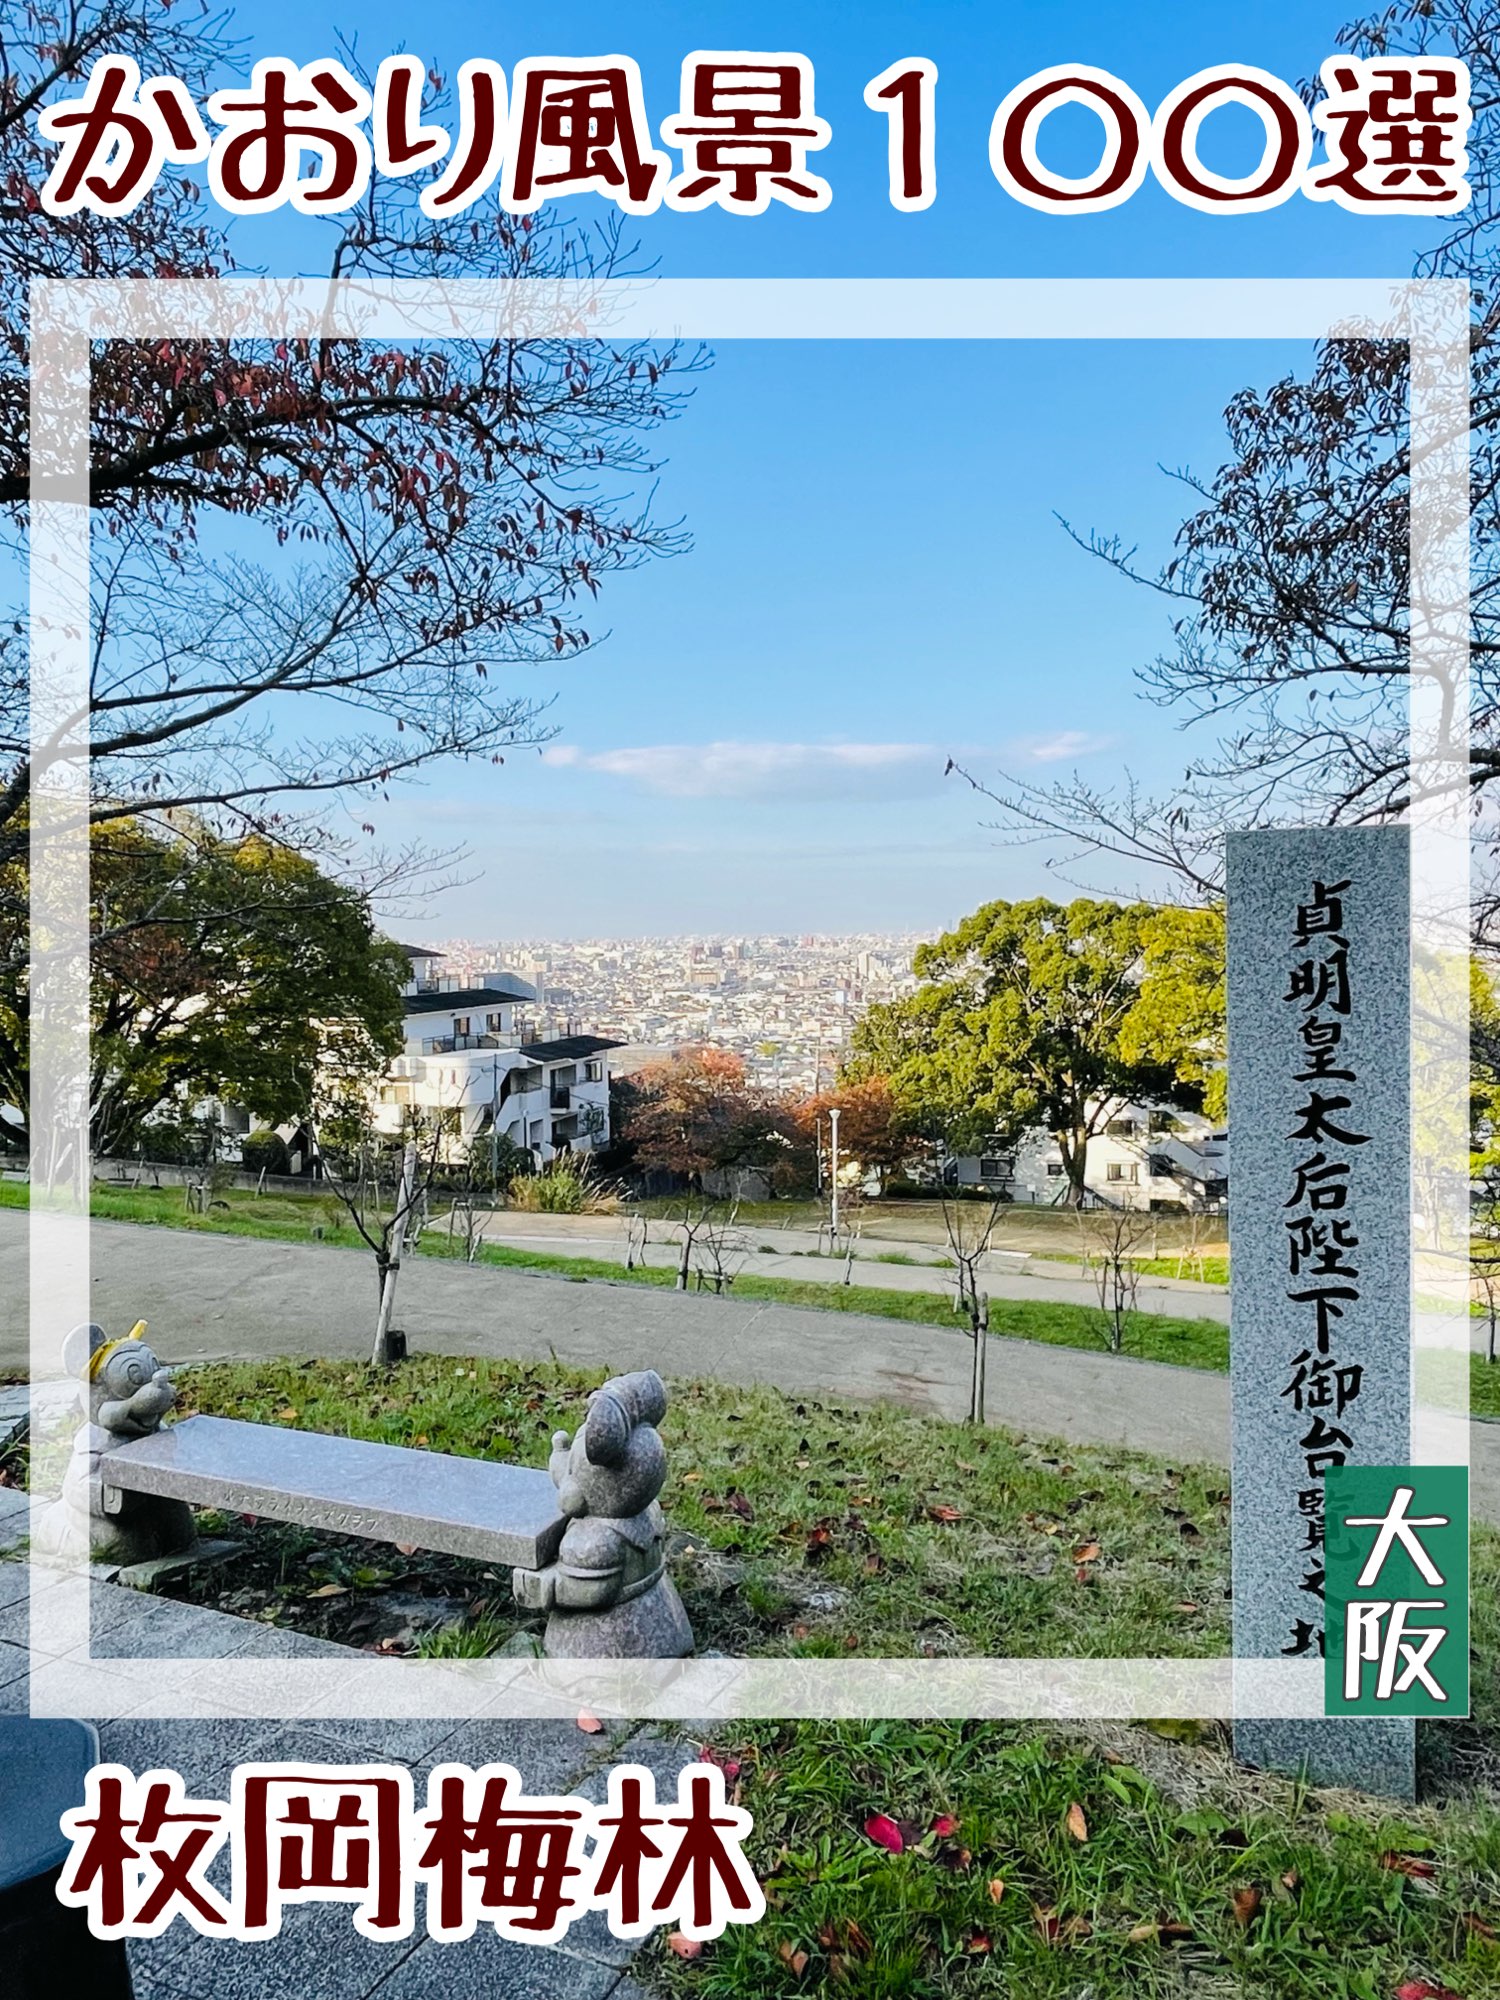 【大阪府/枚冈公园】香织风景100选